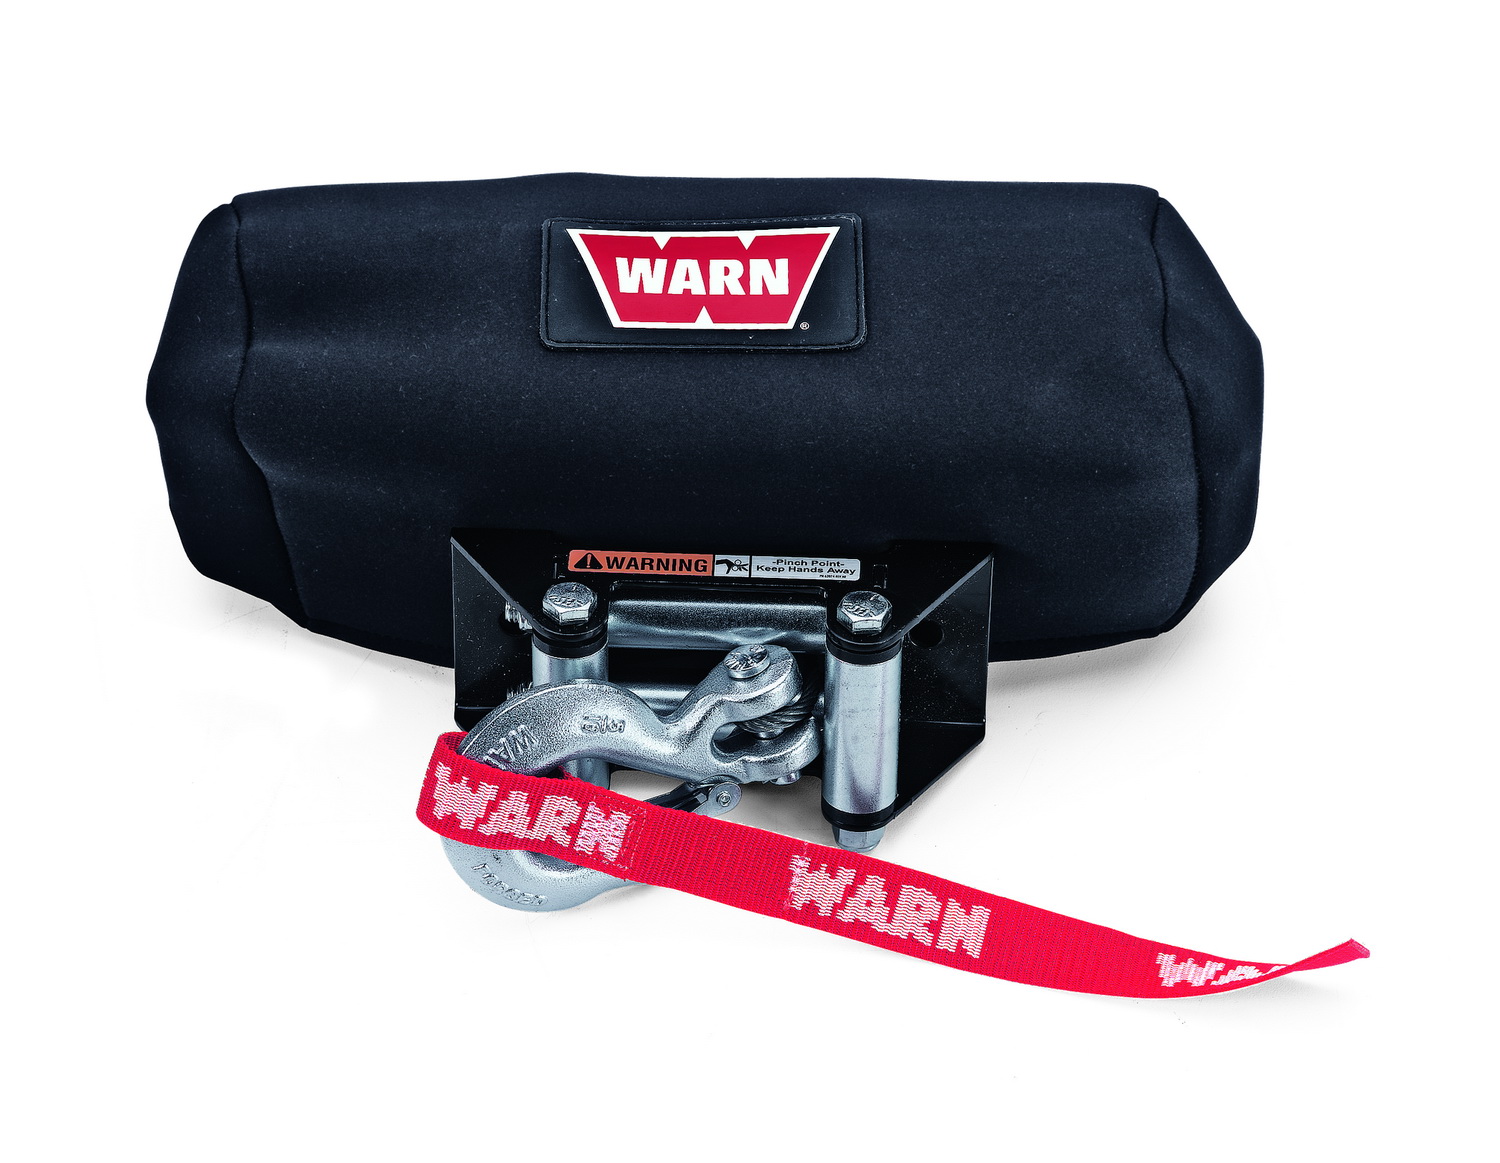 Warn Warn 71975 Neoprene Winch Cover